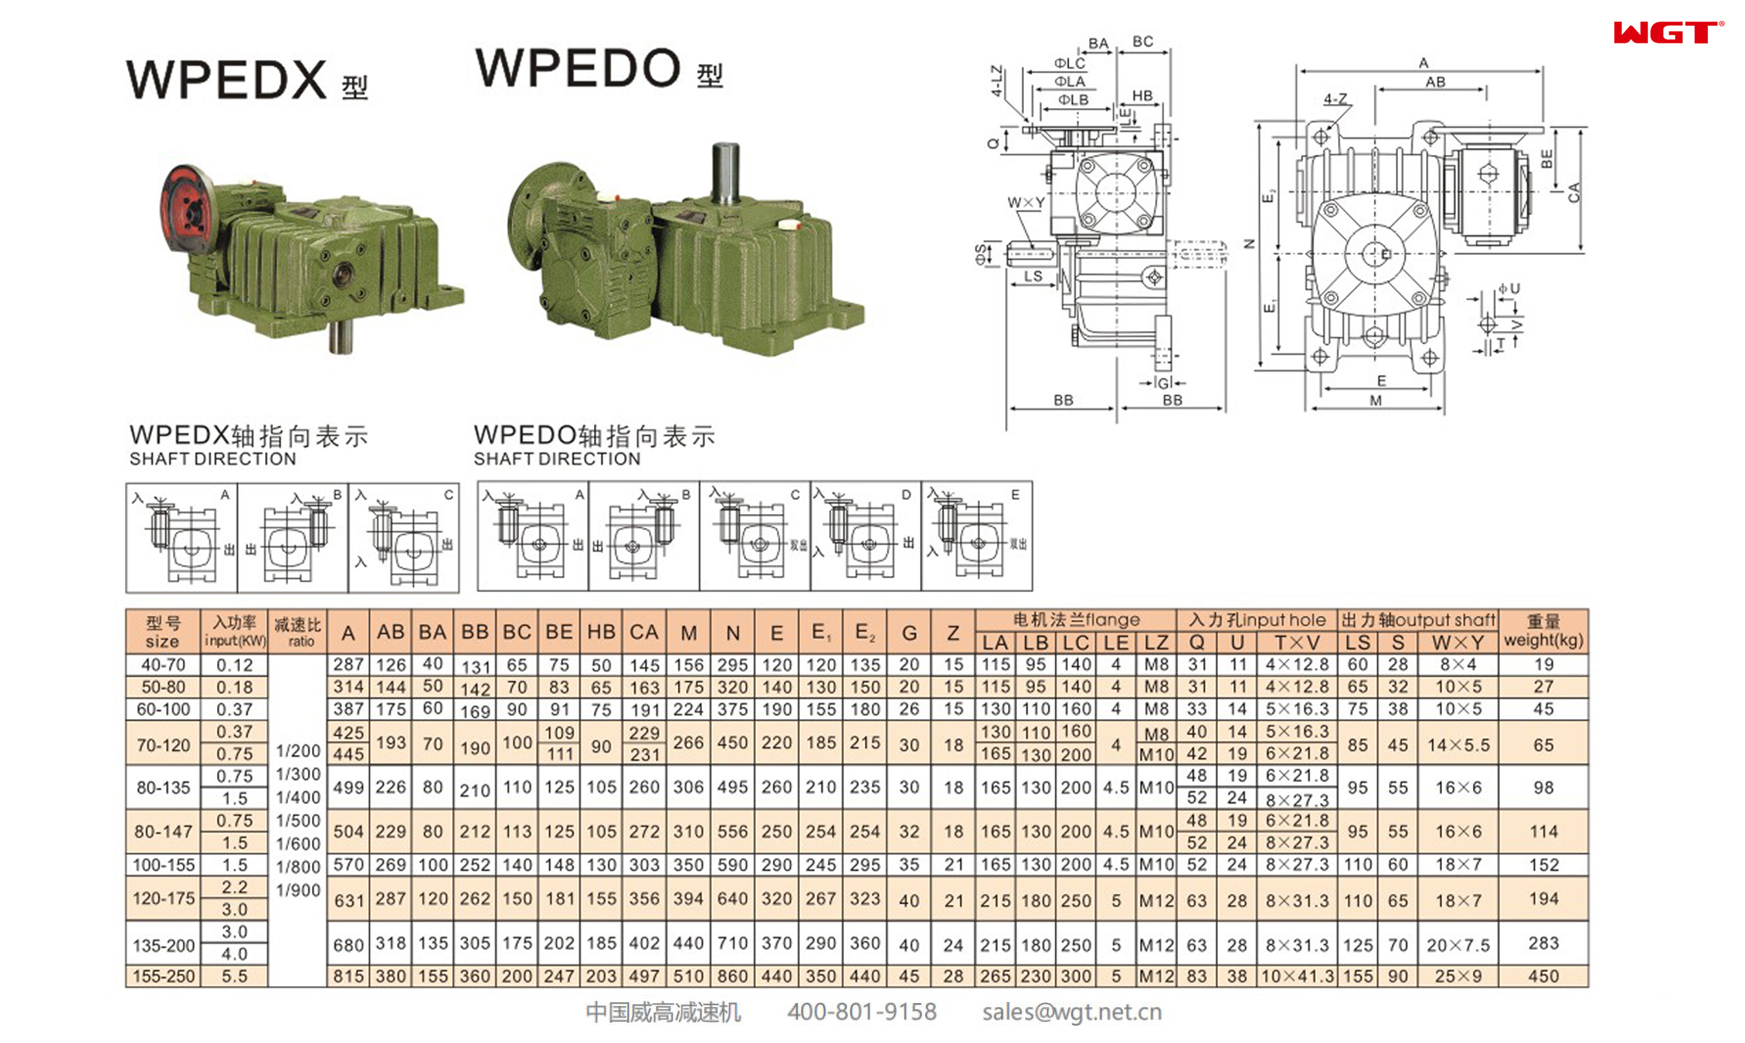 WPEDX WPEDO80-135 蜗轮蜗杆减速机 双速减速机